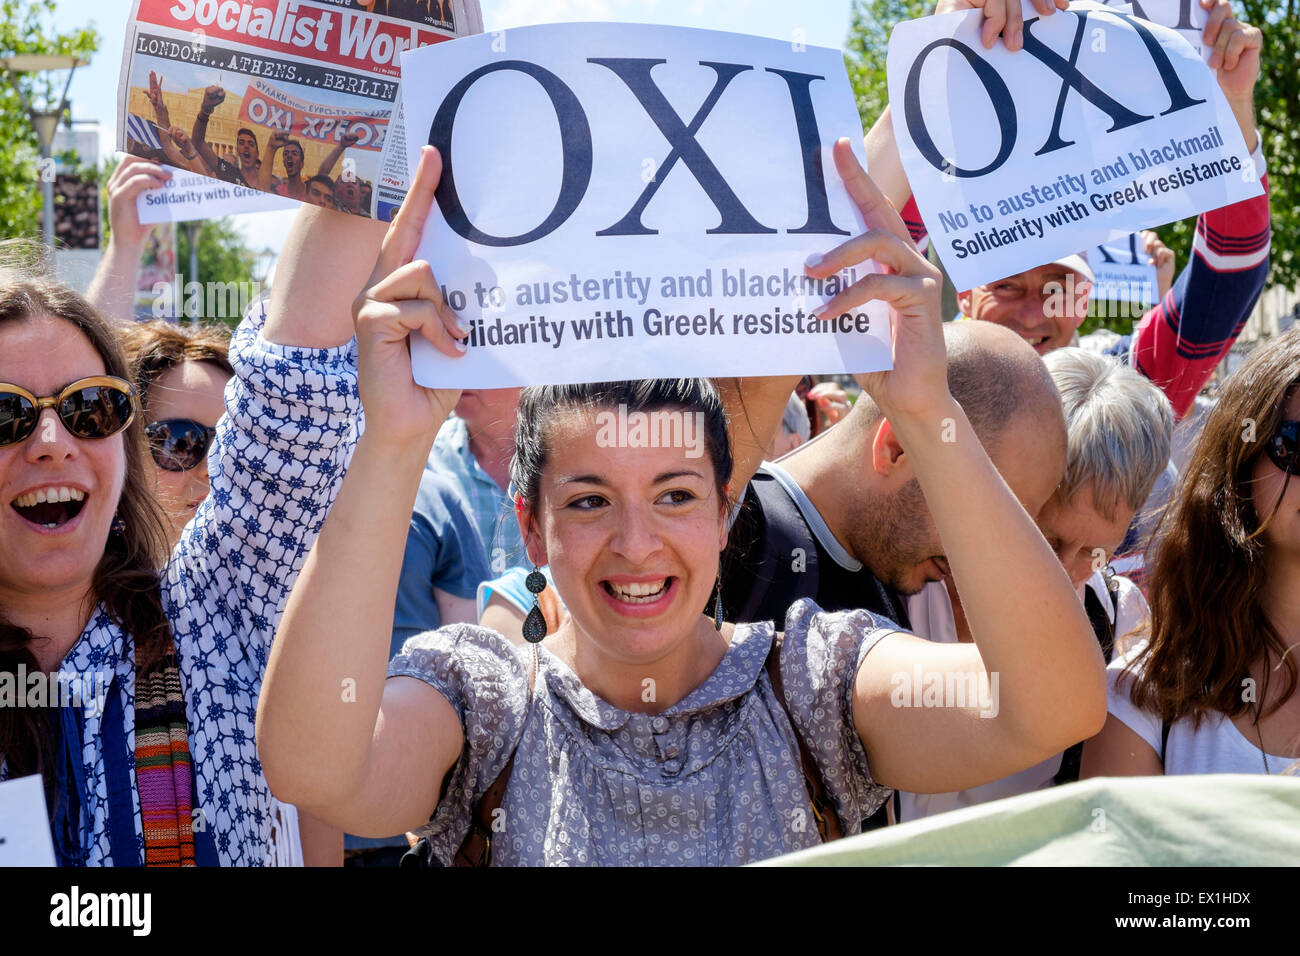 Bristol, Reino Unido, 4 de julio de 2015. Los manifestantes se muestren la celebración de anti-austeridad letreros de oxi no durante una protesta en apoyo de los gobiernos griegos llaman a votar "No" en el referéndum del rescate del domingo. Crédito: lynchpics/Alamy Live News Foto de stock